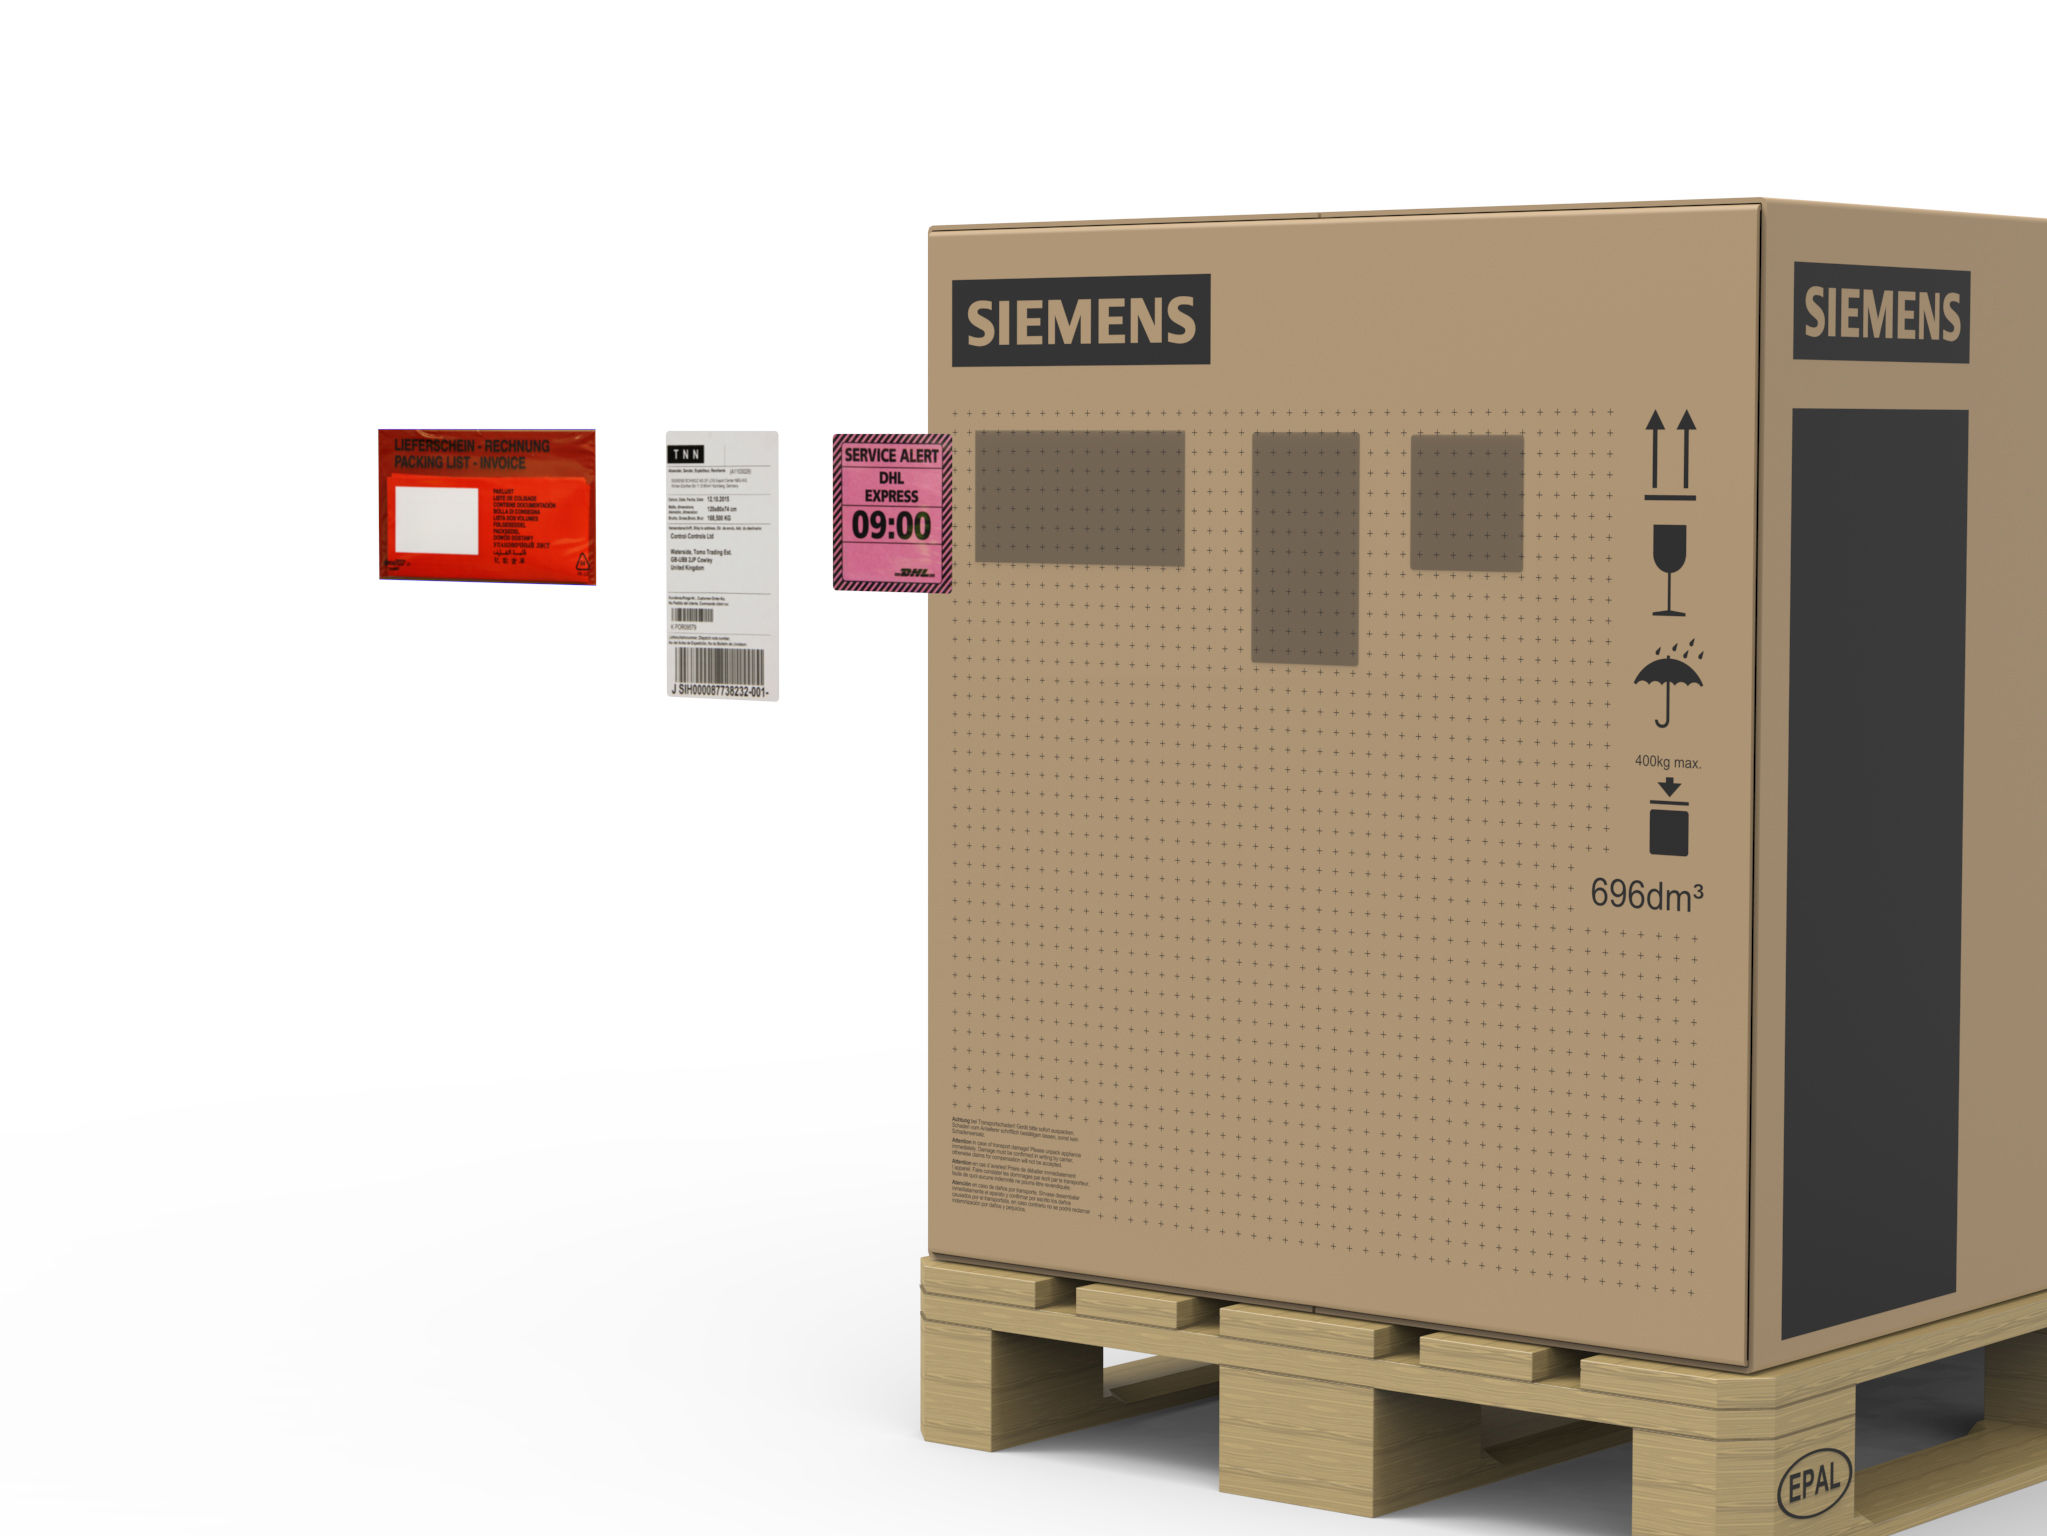 Siemens Packaging